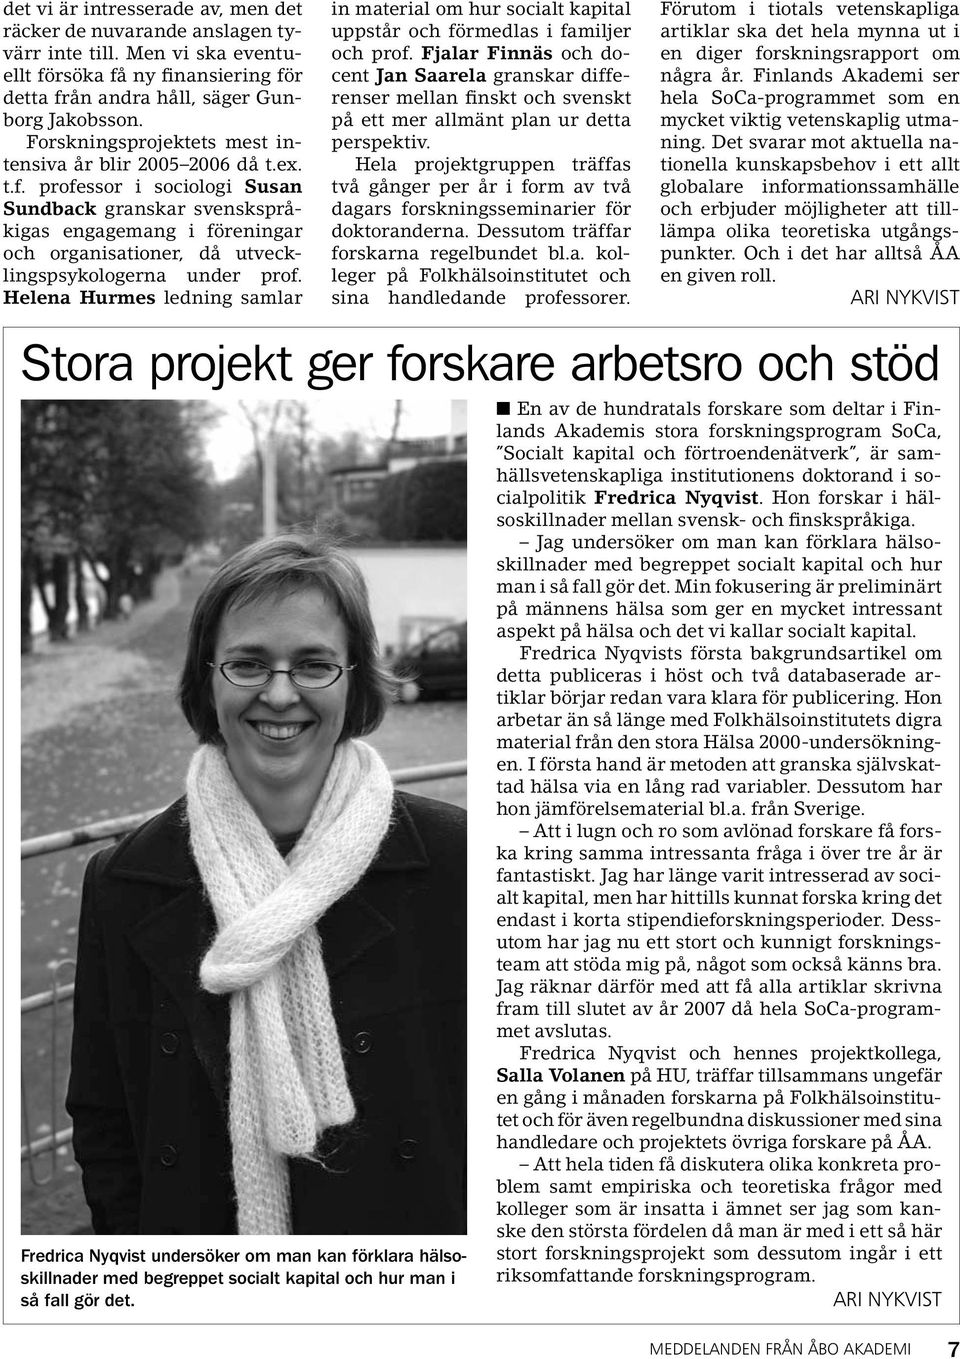 professor i sociologi Susan Sundback granskar svenskspråkigas engagemang i föreningar och organisationer, då utvecklingspsykologerna under prof.